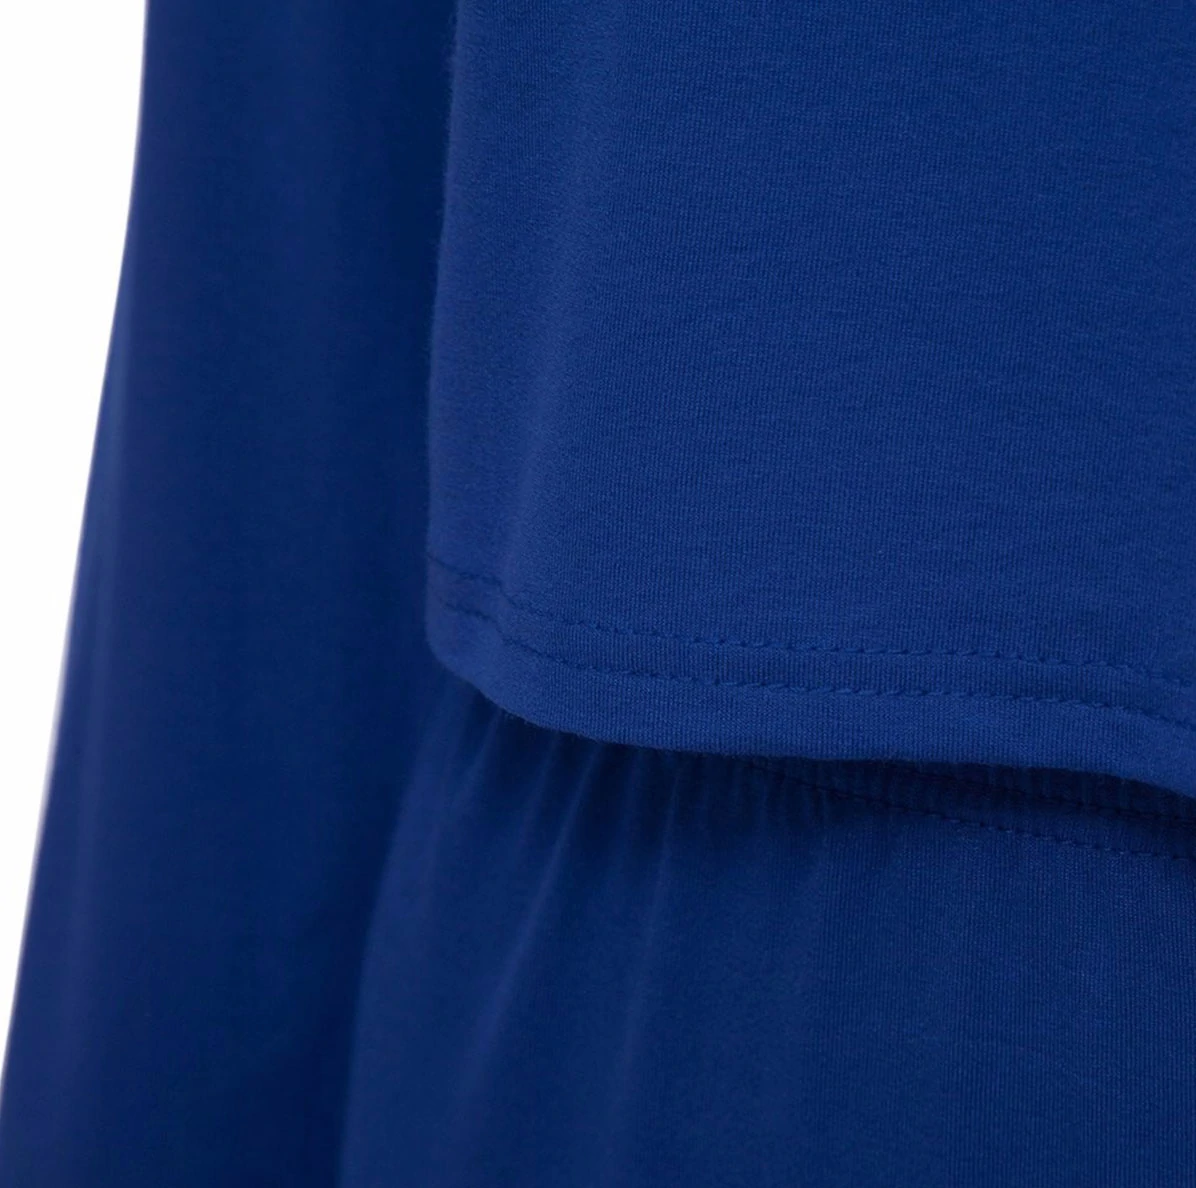 M0181 blue10 Two Piece Sets Dresses maureens.com boutique